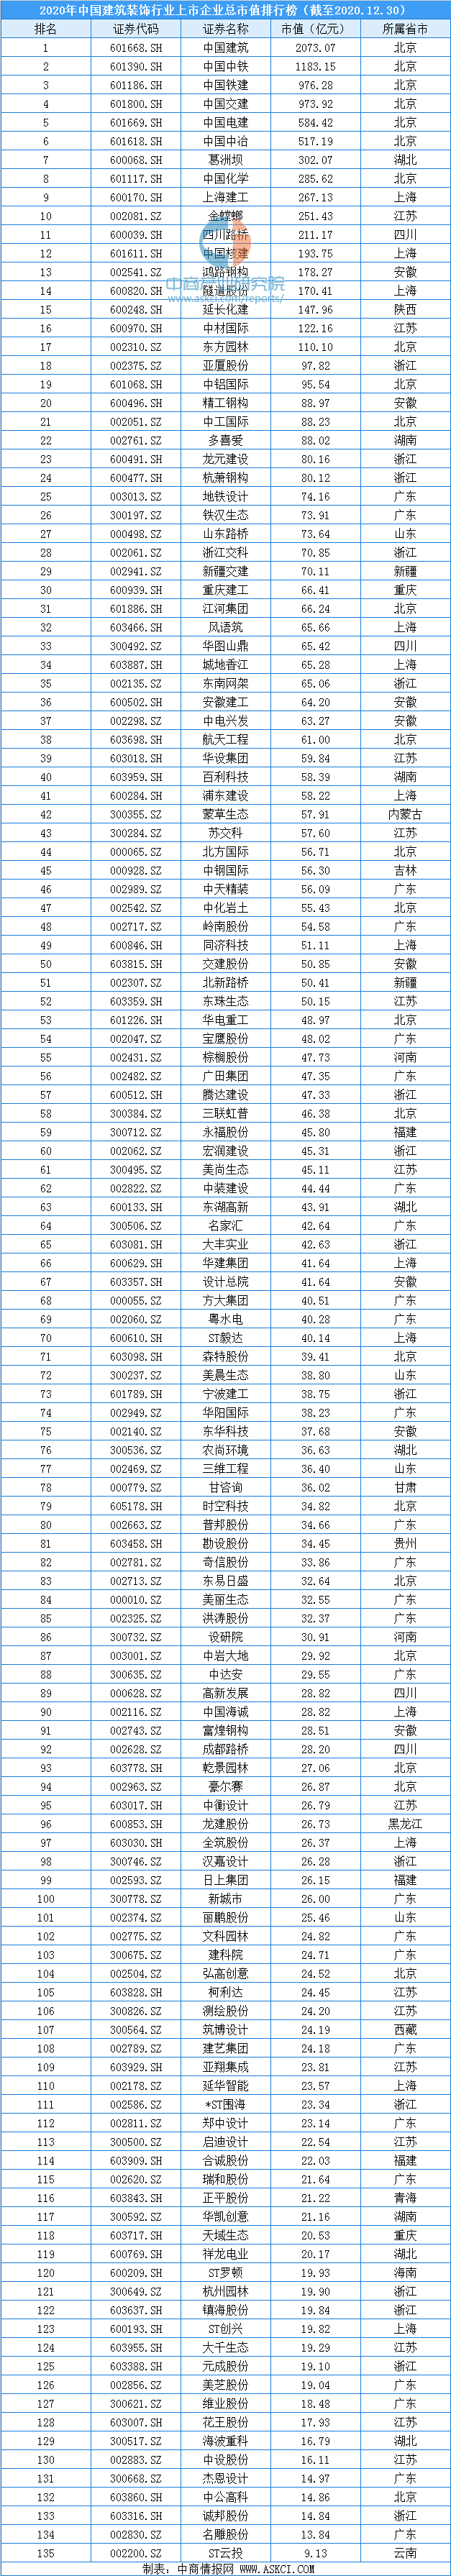 2020年中国建筑装饰行业上市企业市值排行榜